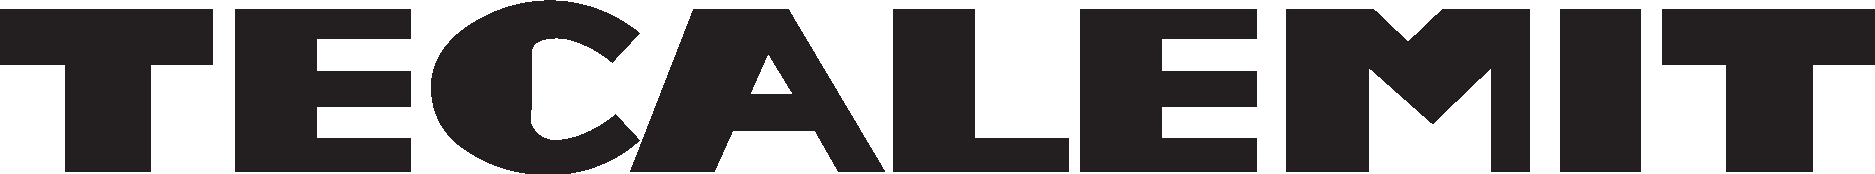 Tecalemit Wordmark Logo Vector